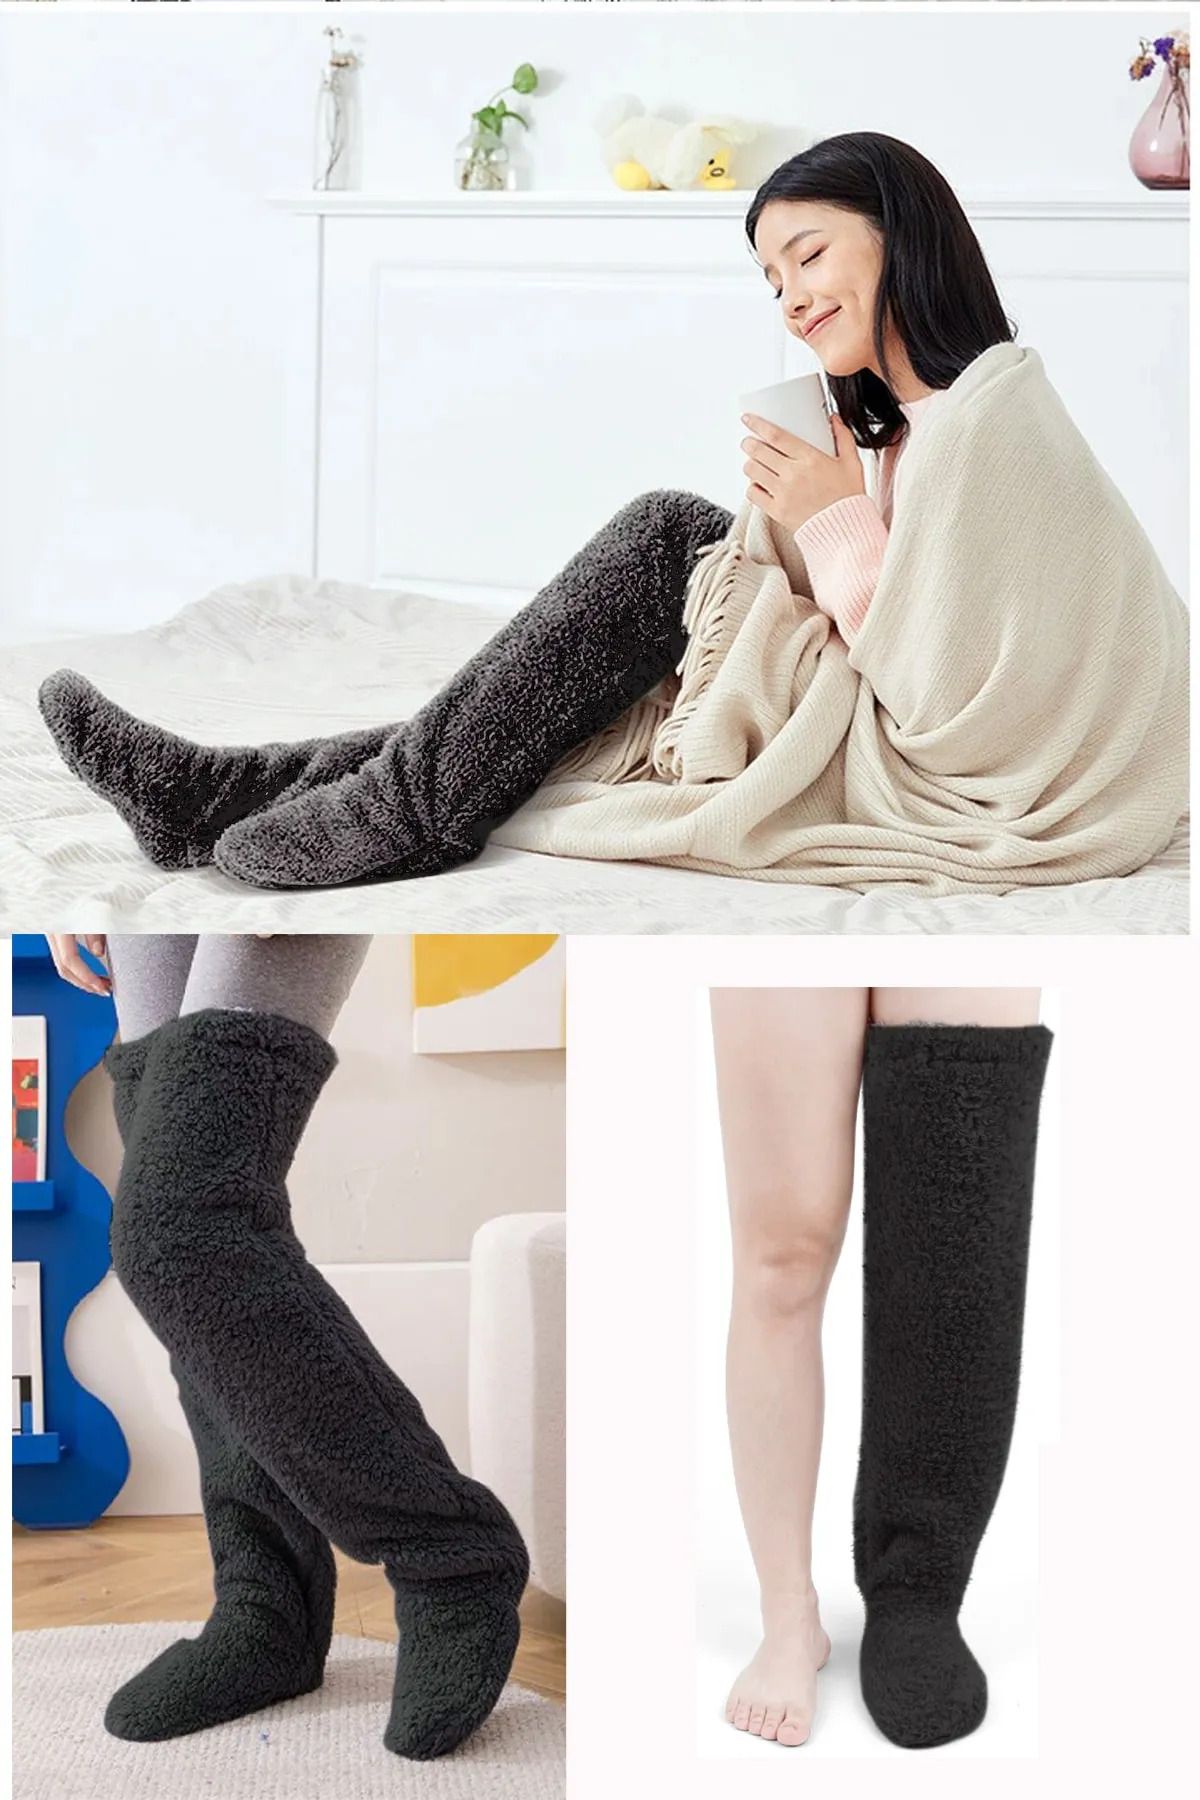 Pababo Wellsoft Diz Üstü Ev Çorabı Peluş Uyku Çorabı Ayak Isıtıcı Uzun Pelüş Çorap